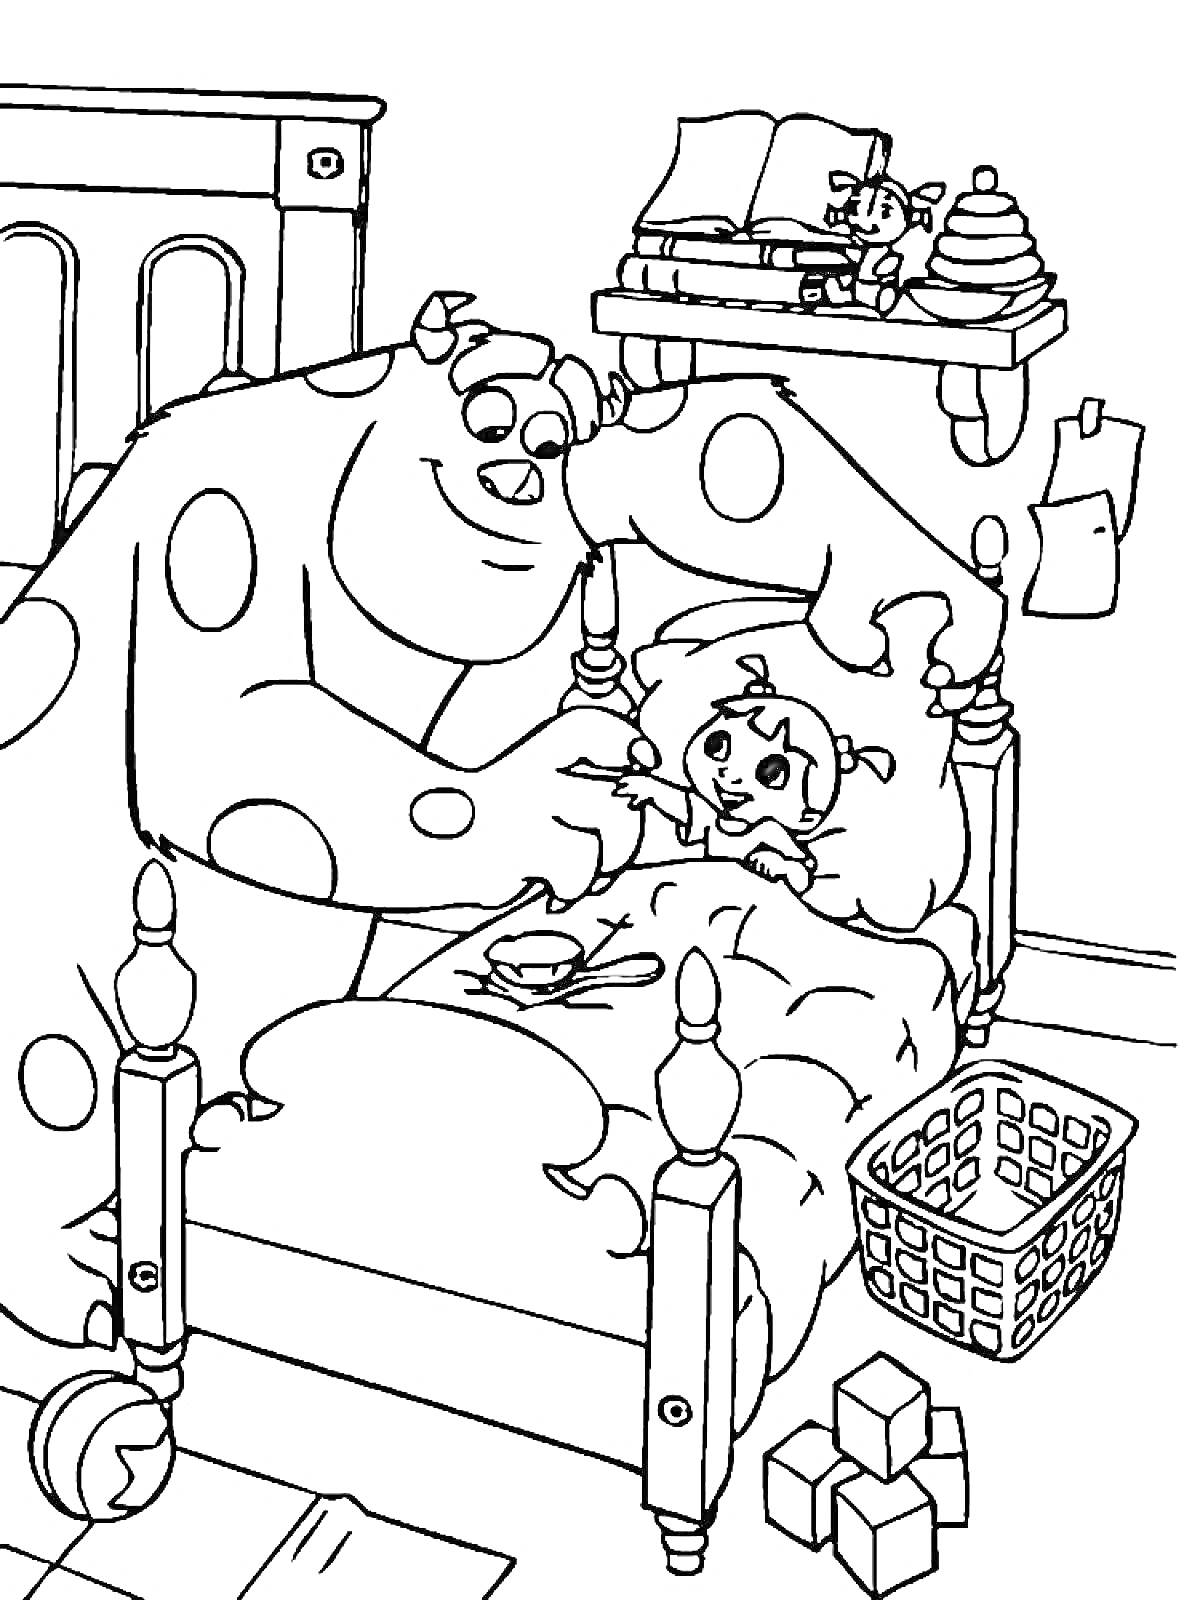 Монстр Салли кормит девочку в кровати, комната с игрушками и корзиной для белья